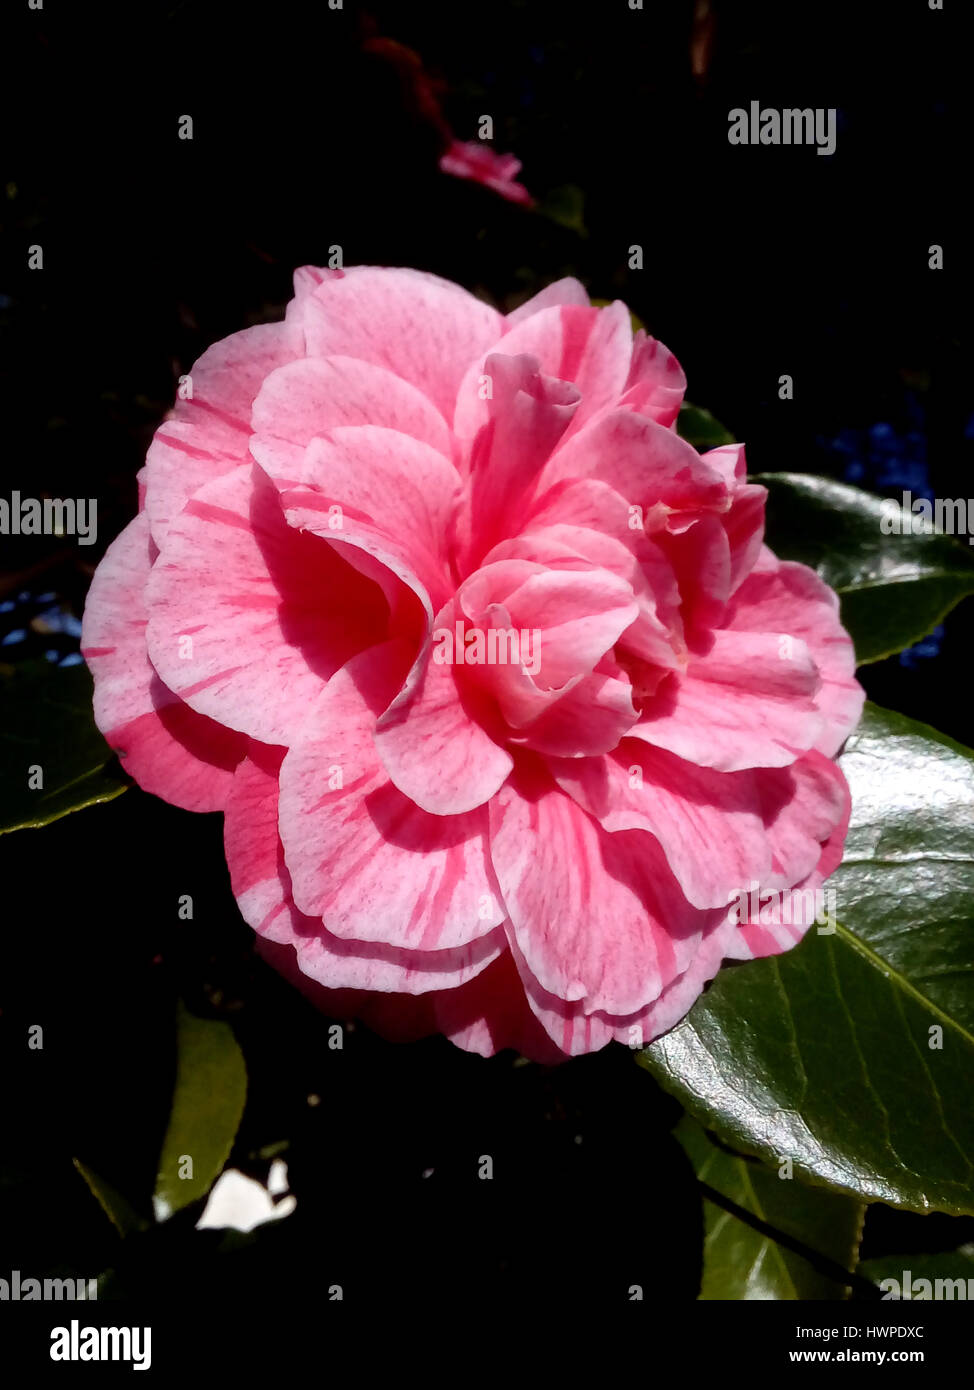 Camelia, doble rosa flor, Camellia japonica, Japonesa, Rosa de invierno, la  flor oficial del Estado de Alabama, también conocida como flor de té  Fotografía de stock - Alamy